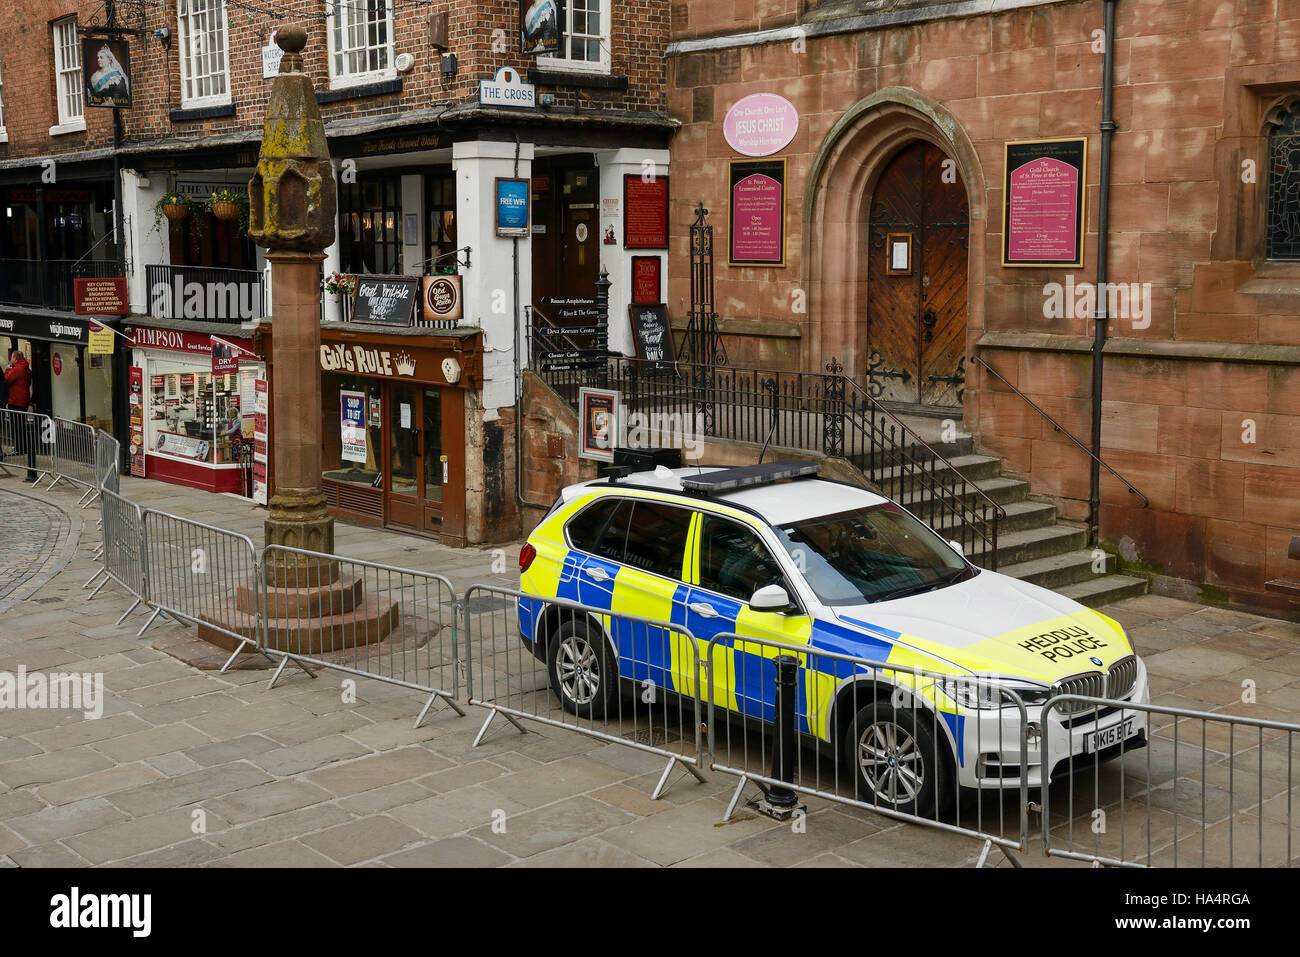 Chester, Royaume-Uni. 28 novembre 2016. Une forte présence policière et de sécurité dans le centre-ville d'avance sur le service commémoratif pour le Duc de Westminster qui est mort le 9 août 2016. Andrew Paterson/Alamy Live News Banque D'Images